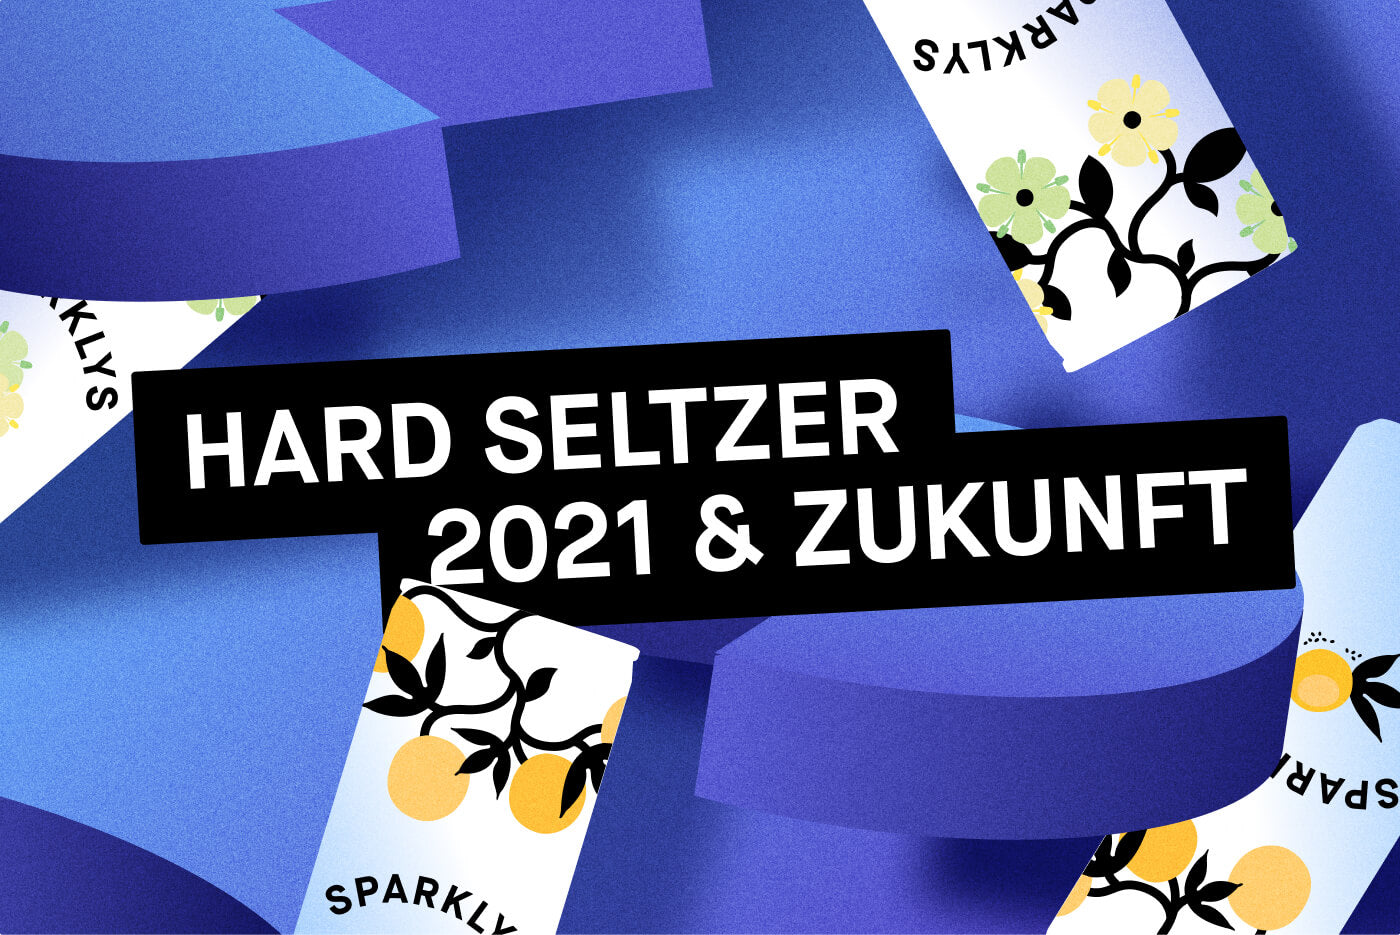 Hard Seltzer 2022 — Was bringt die Zukunft?